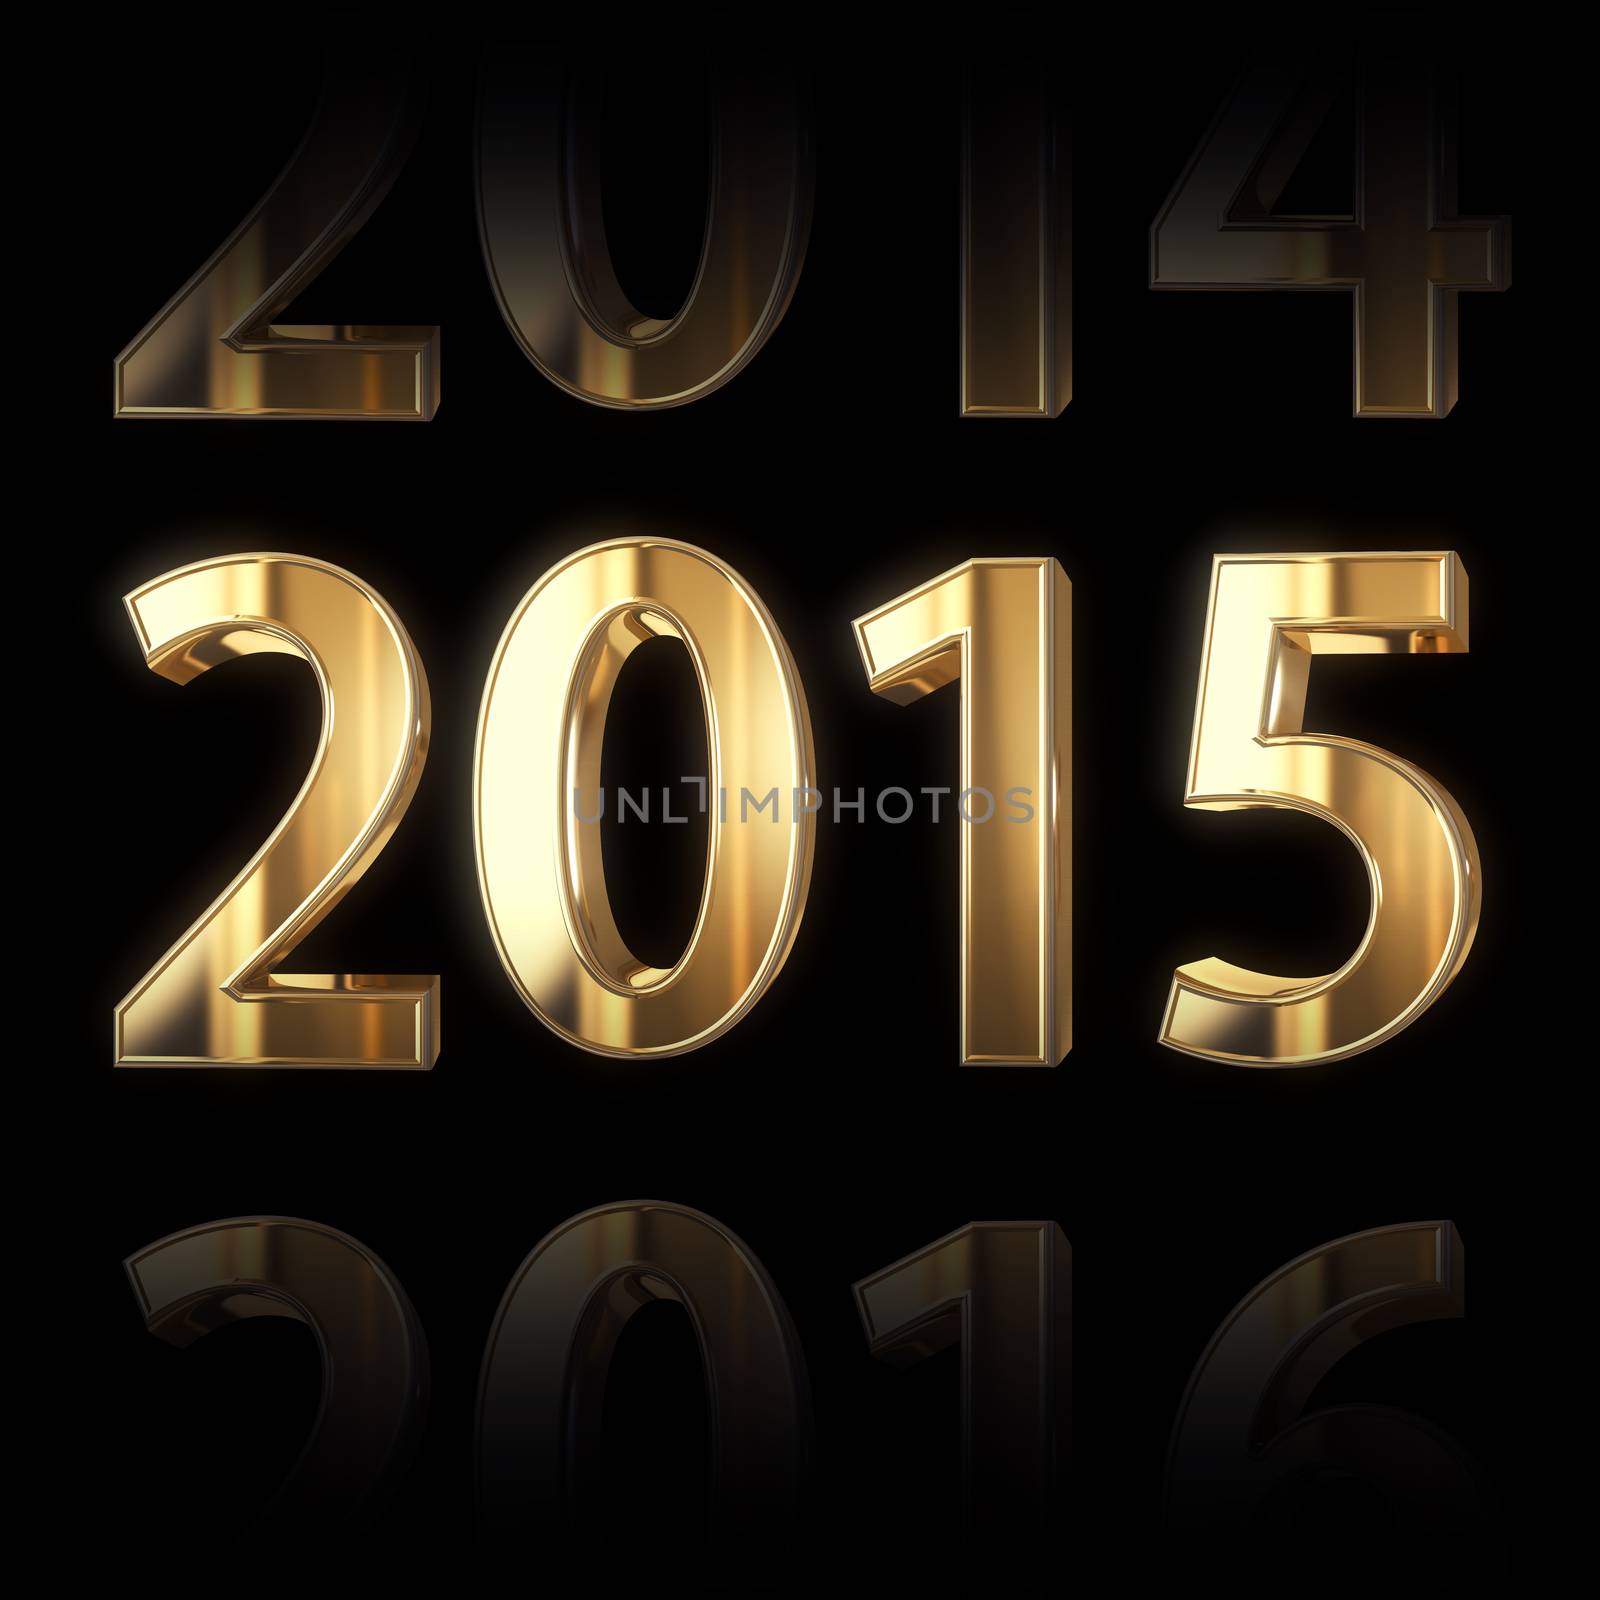 3D golden 2015 year background
 by 123dartist